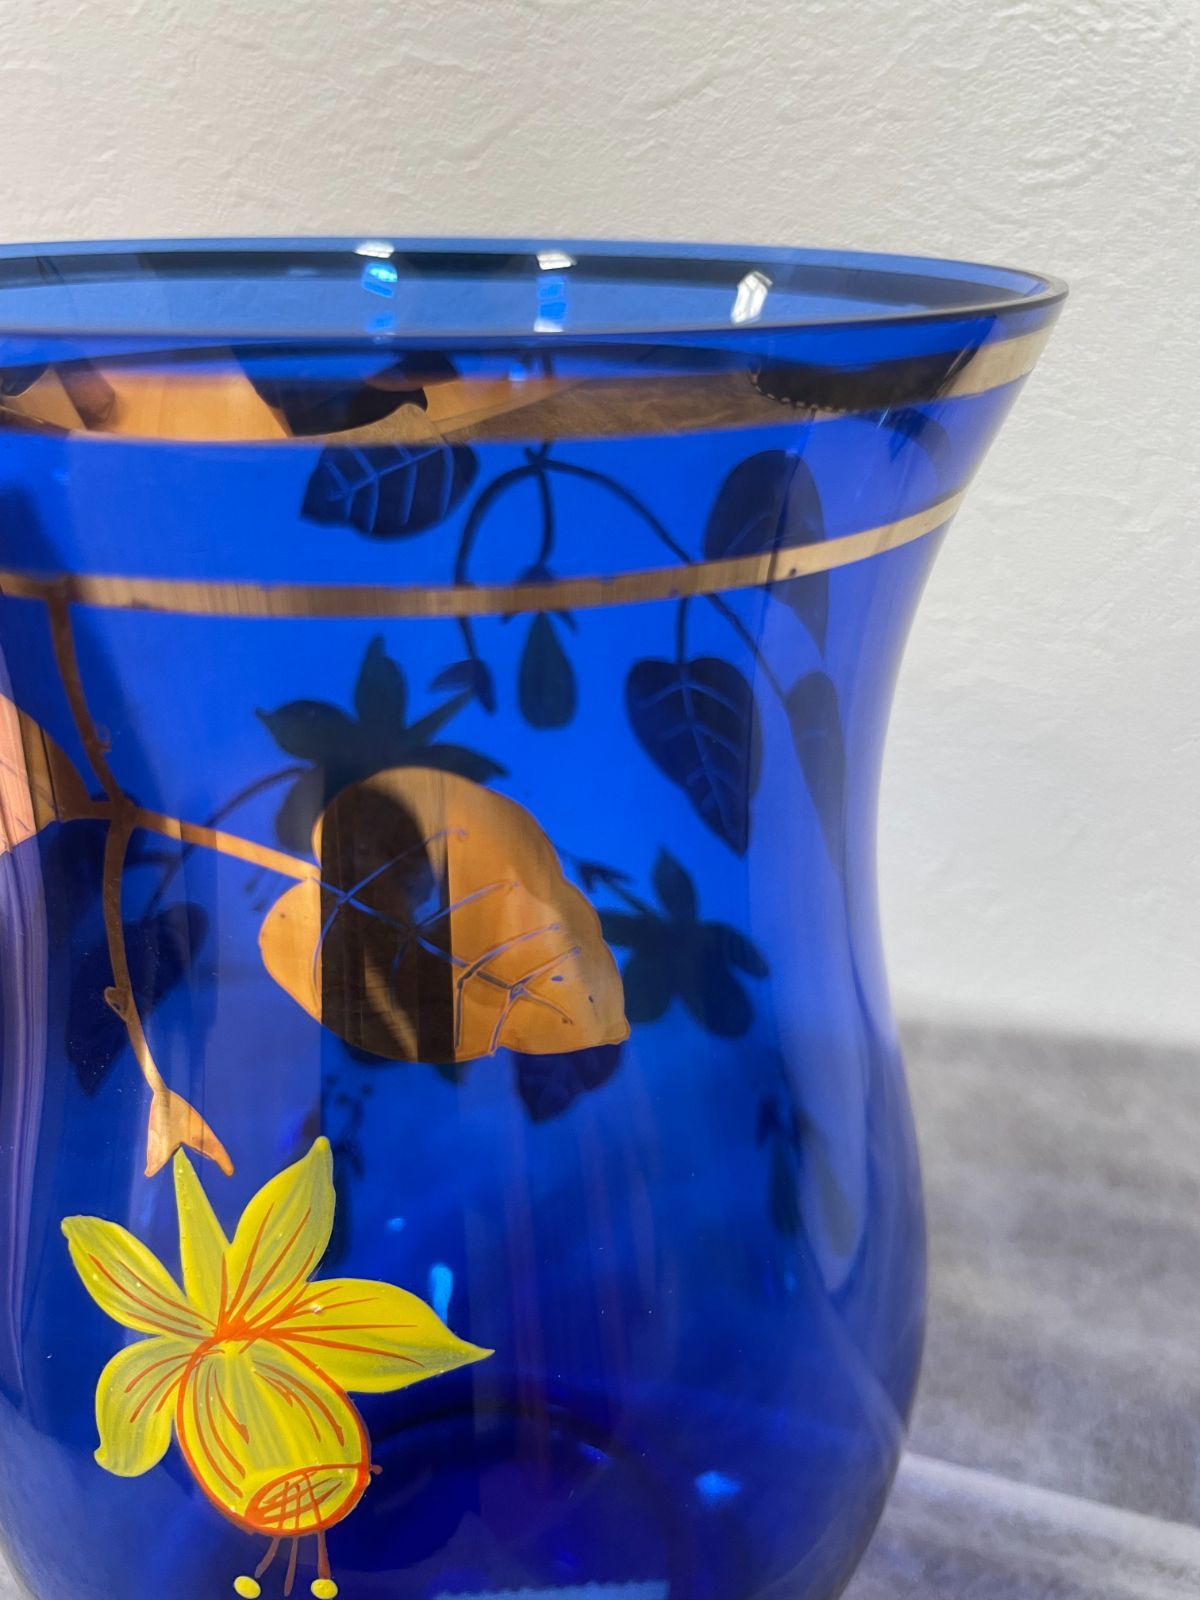 【9640】未使用 ボヘミアガラス 花瓶 高さ約23cm 青 ブルー 花柄 花器 フラワーベース 置物 インテリア オブジェ 箱付き 現状品 長期保管品